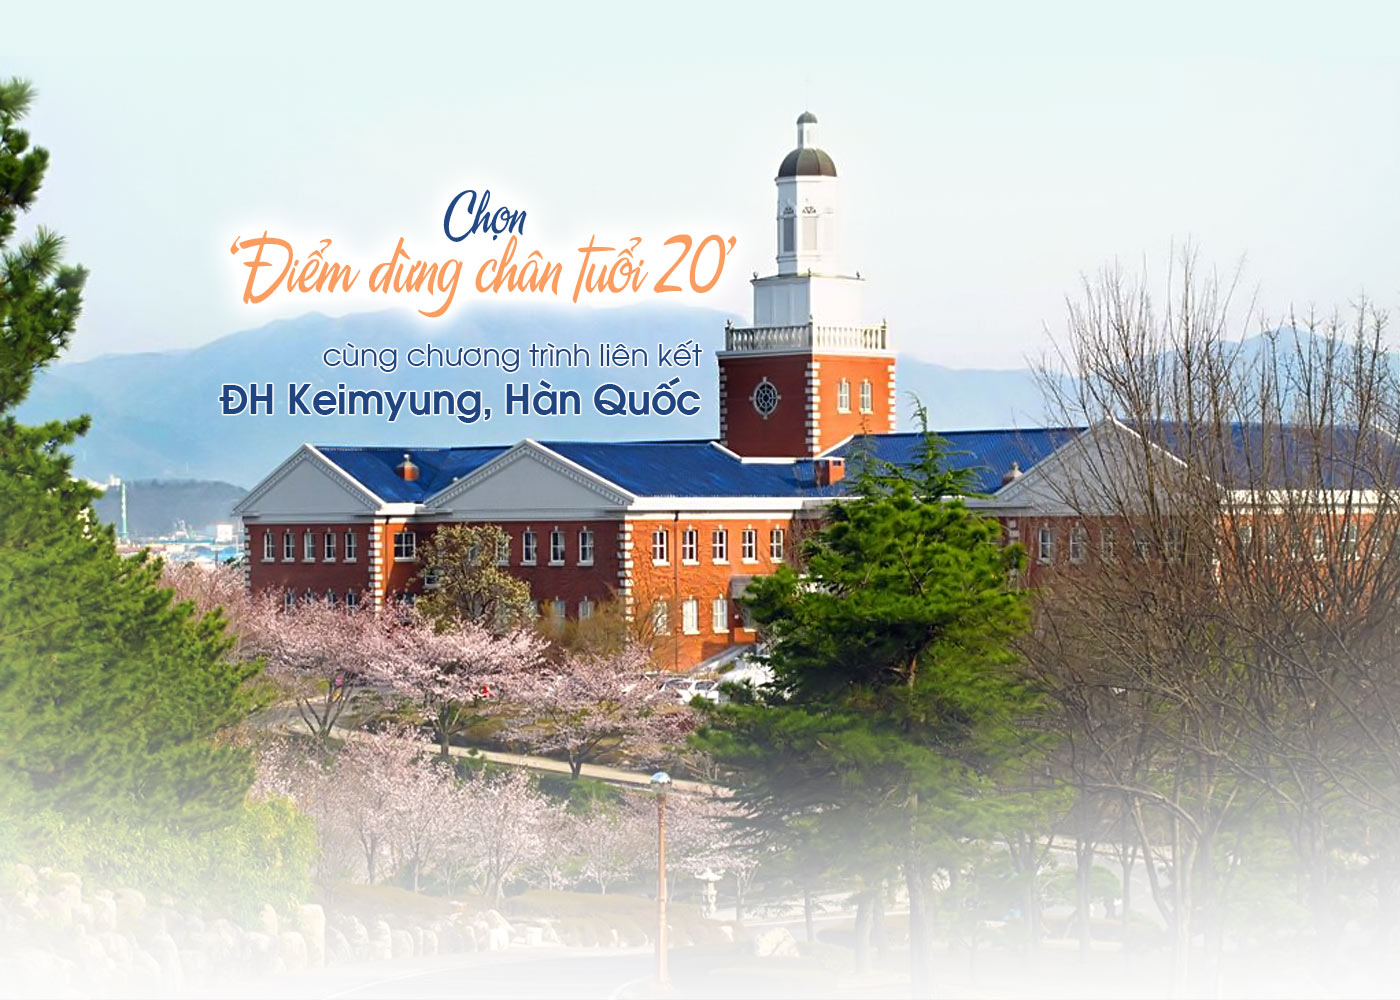 Chọn điểm dừng chân tuổi 20 cùng chương trình liên kết ĐH Keimyung, Hàn Quốc - Ảnh 1